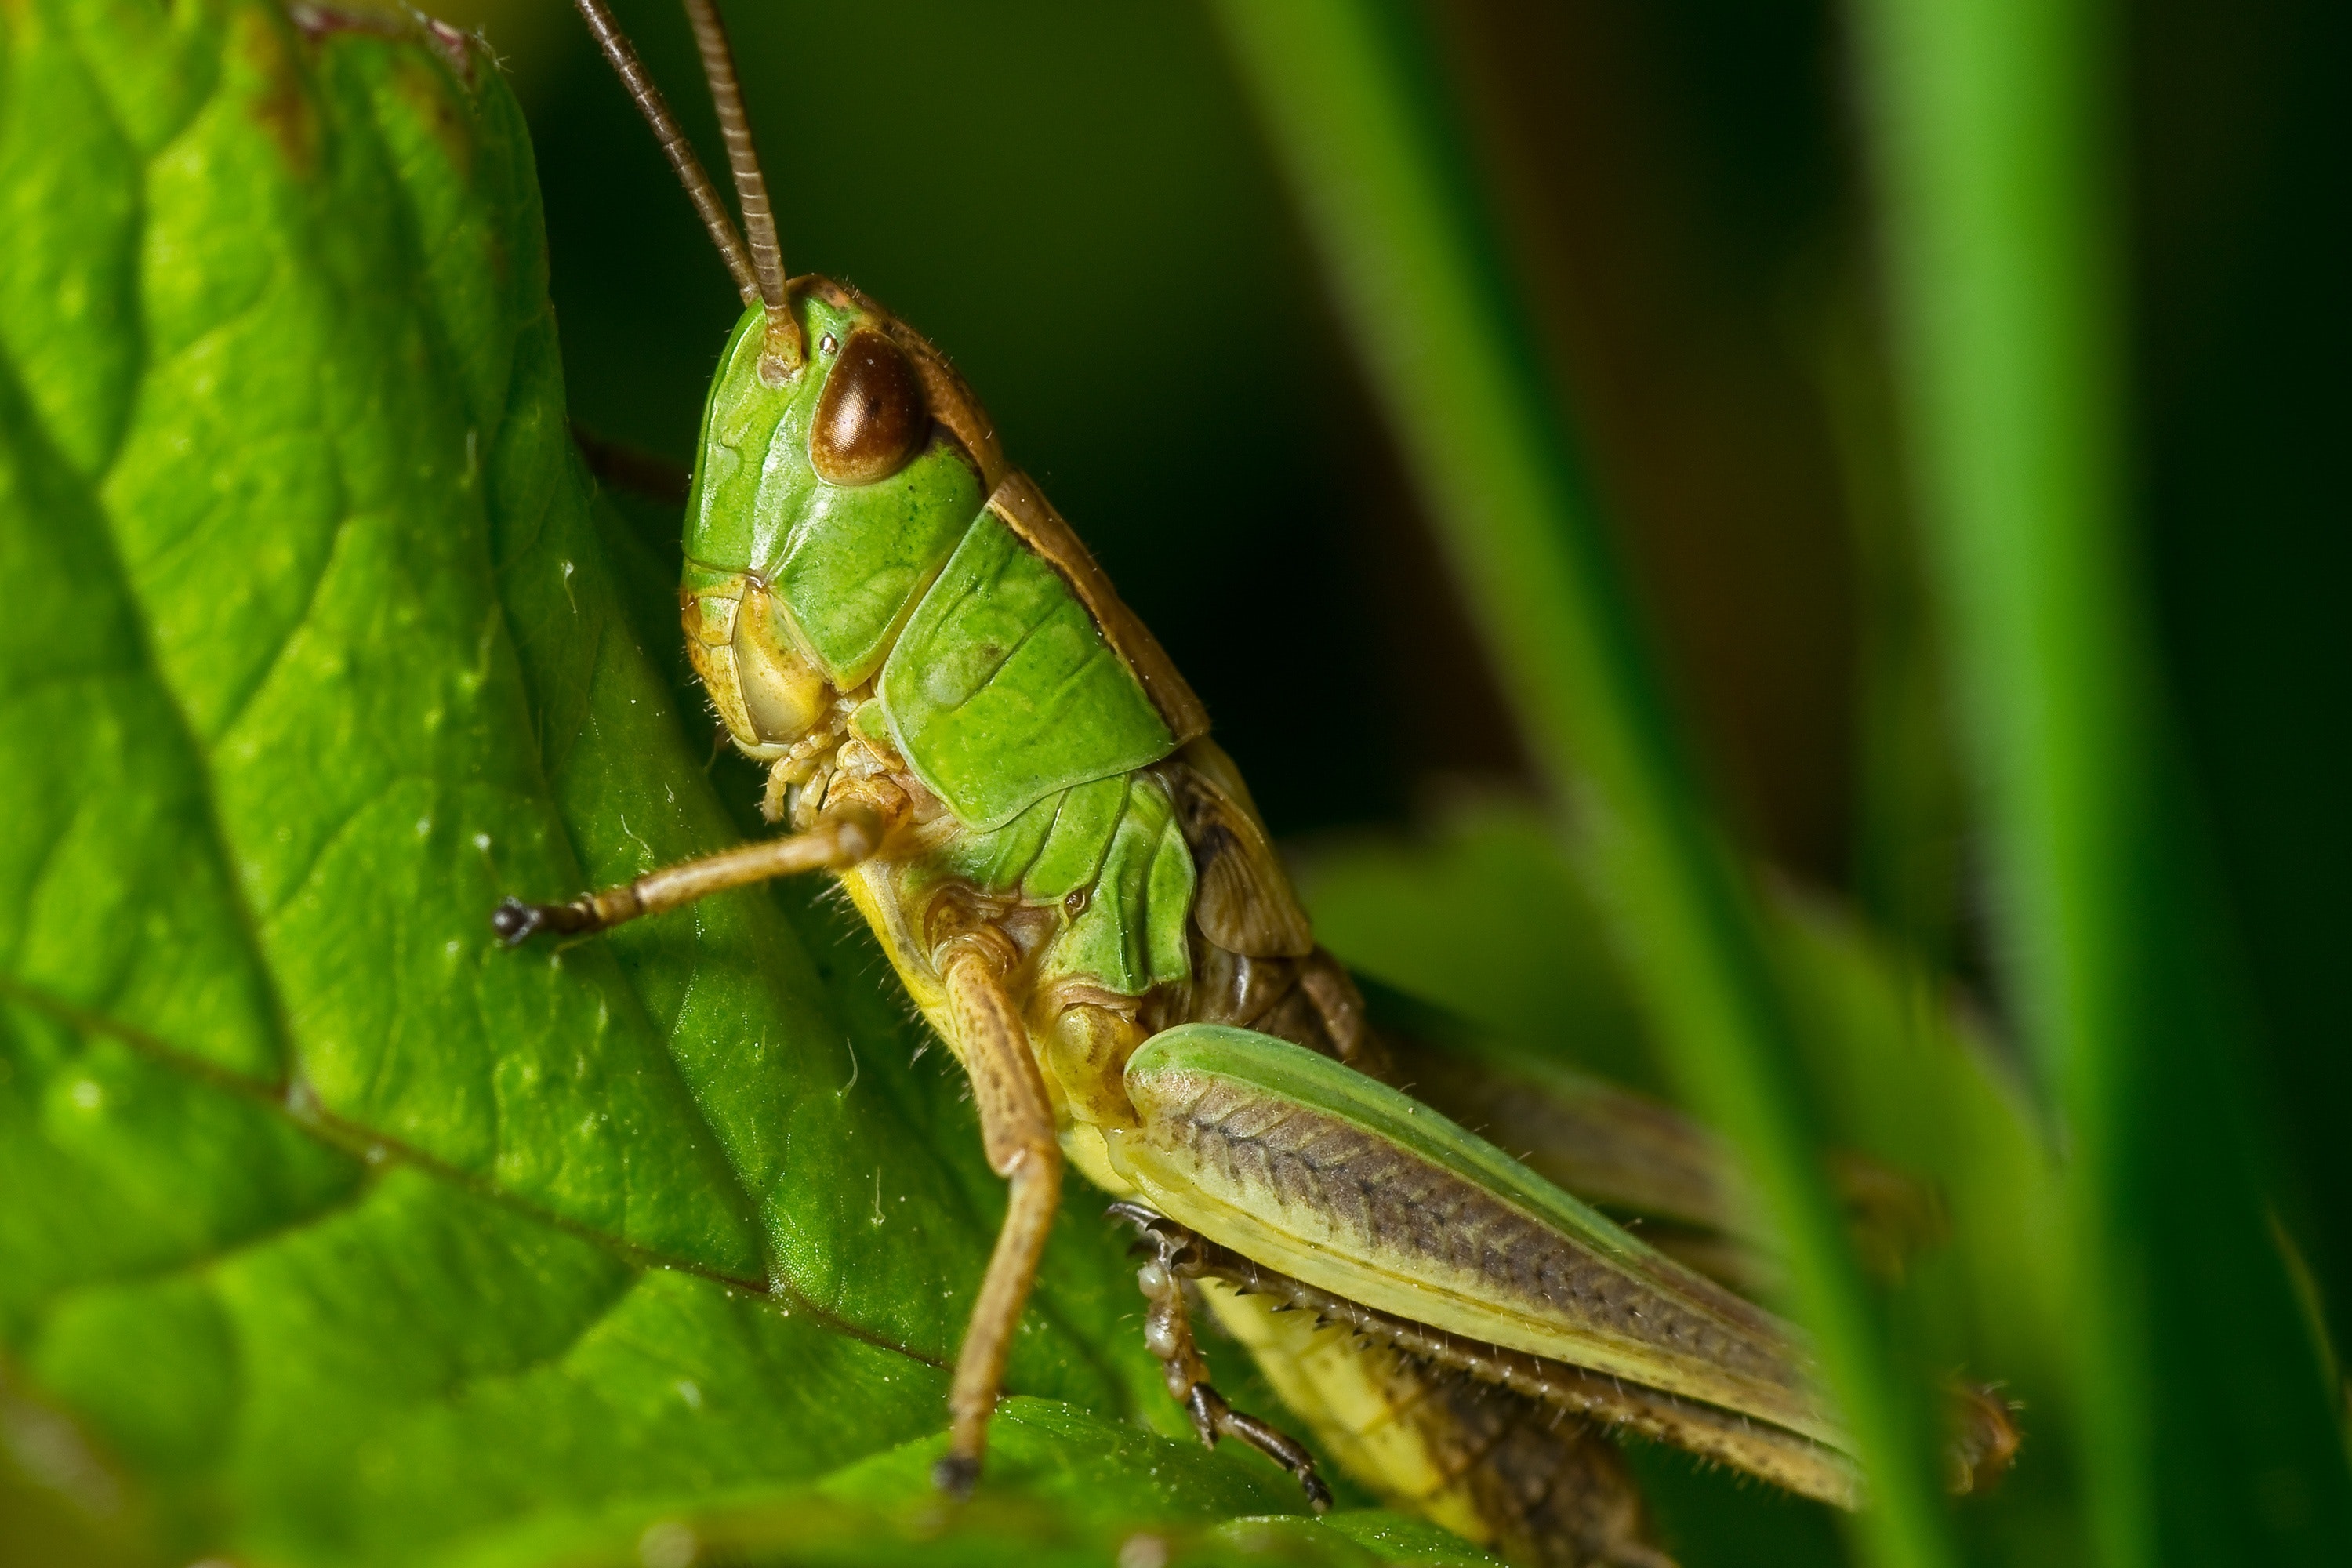 Green grasshopper photo